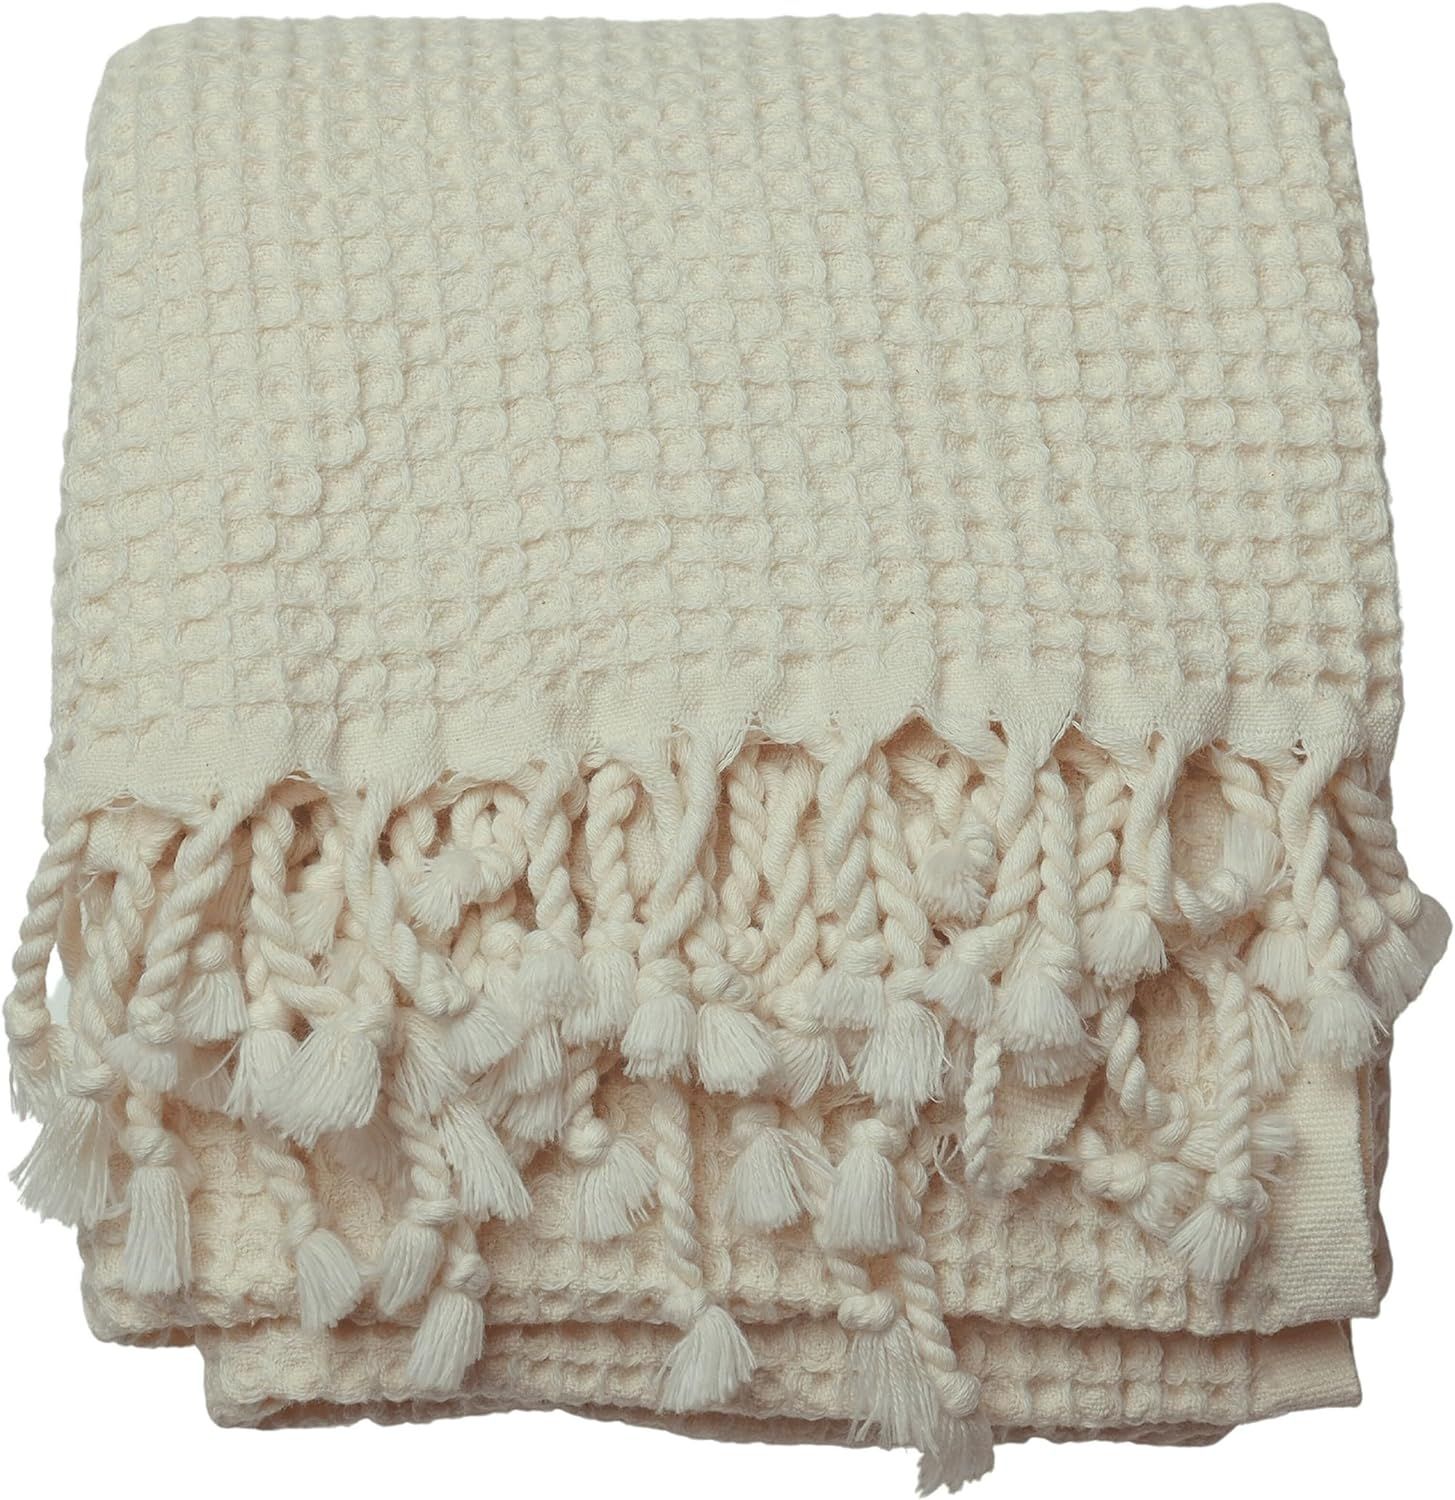 PÜSKÜL - Thin Turkish Bath Towels, Ultra Soft Organic Cotton, Waffle Weaving, 67X33 Inches - Pa... | Amazon (US)